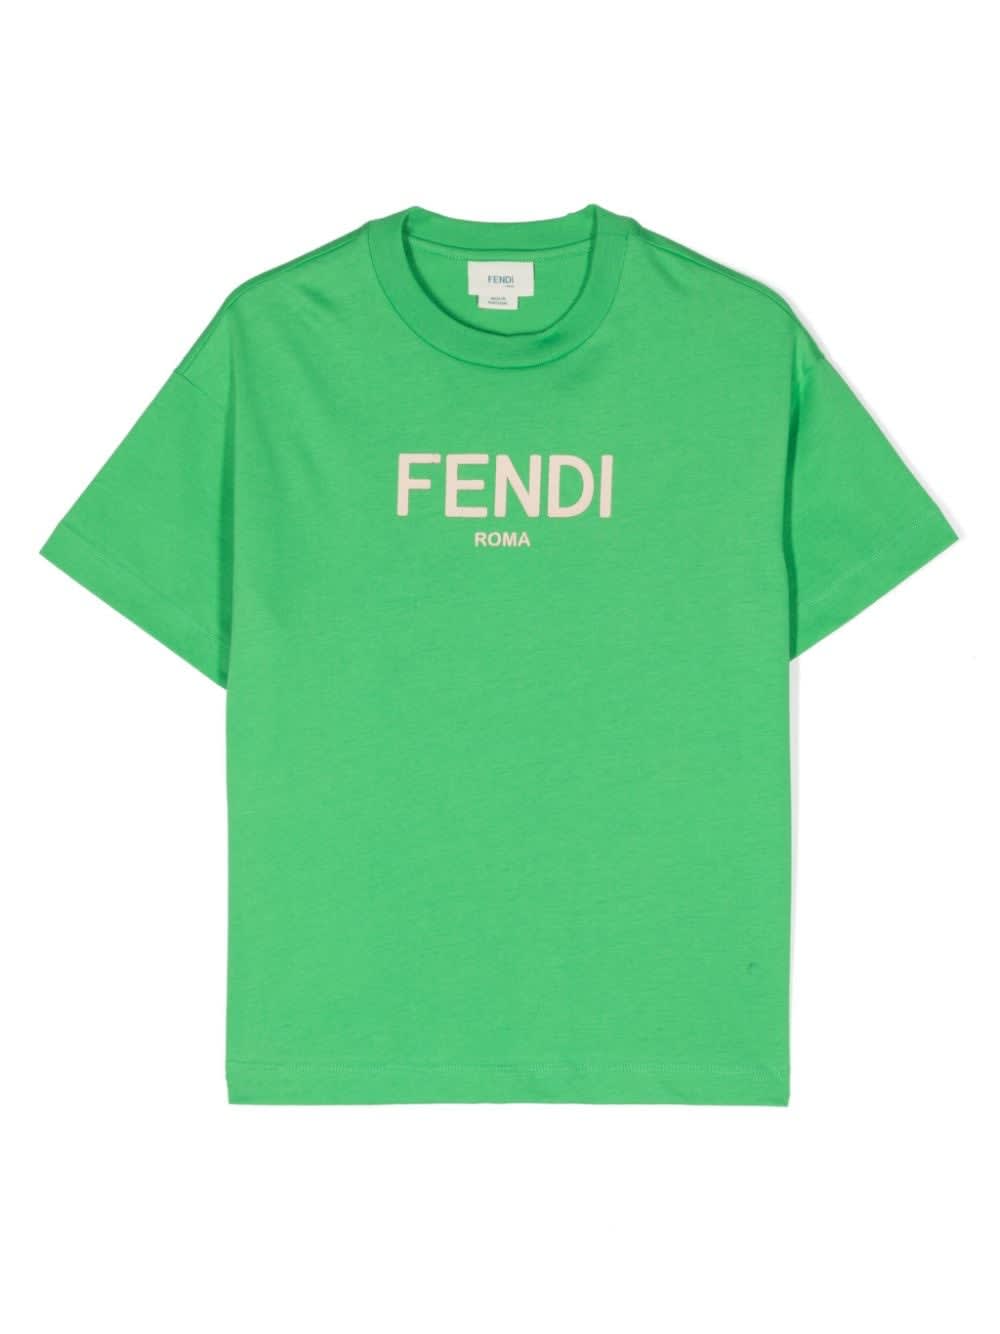 Fendi T-shirt Verde In Jersey Di Cotone Bambino